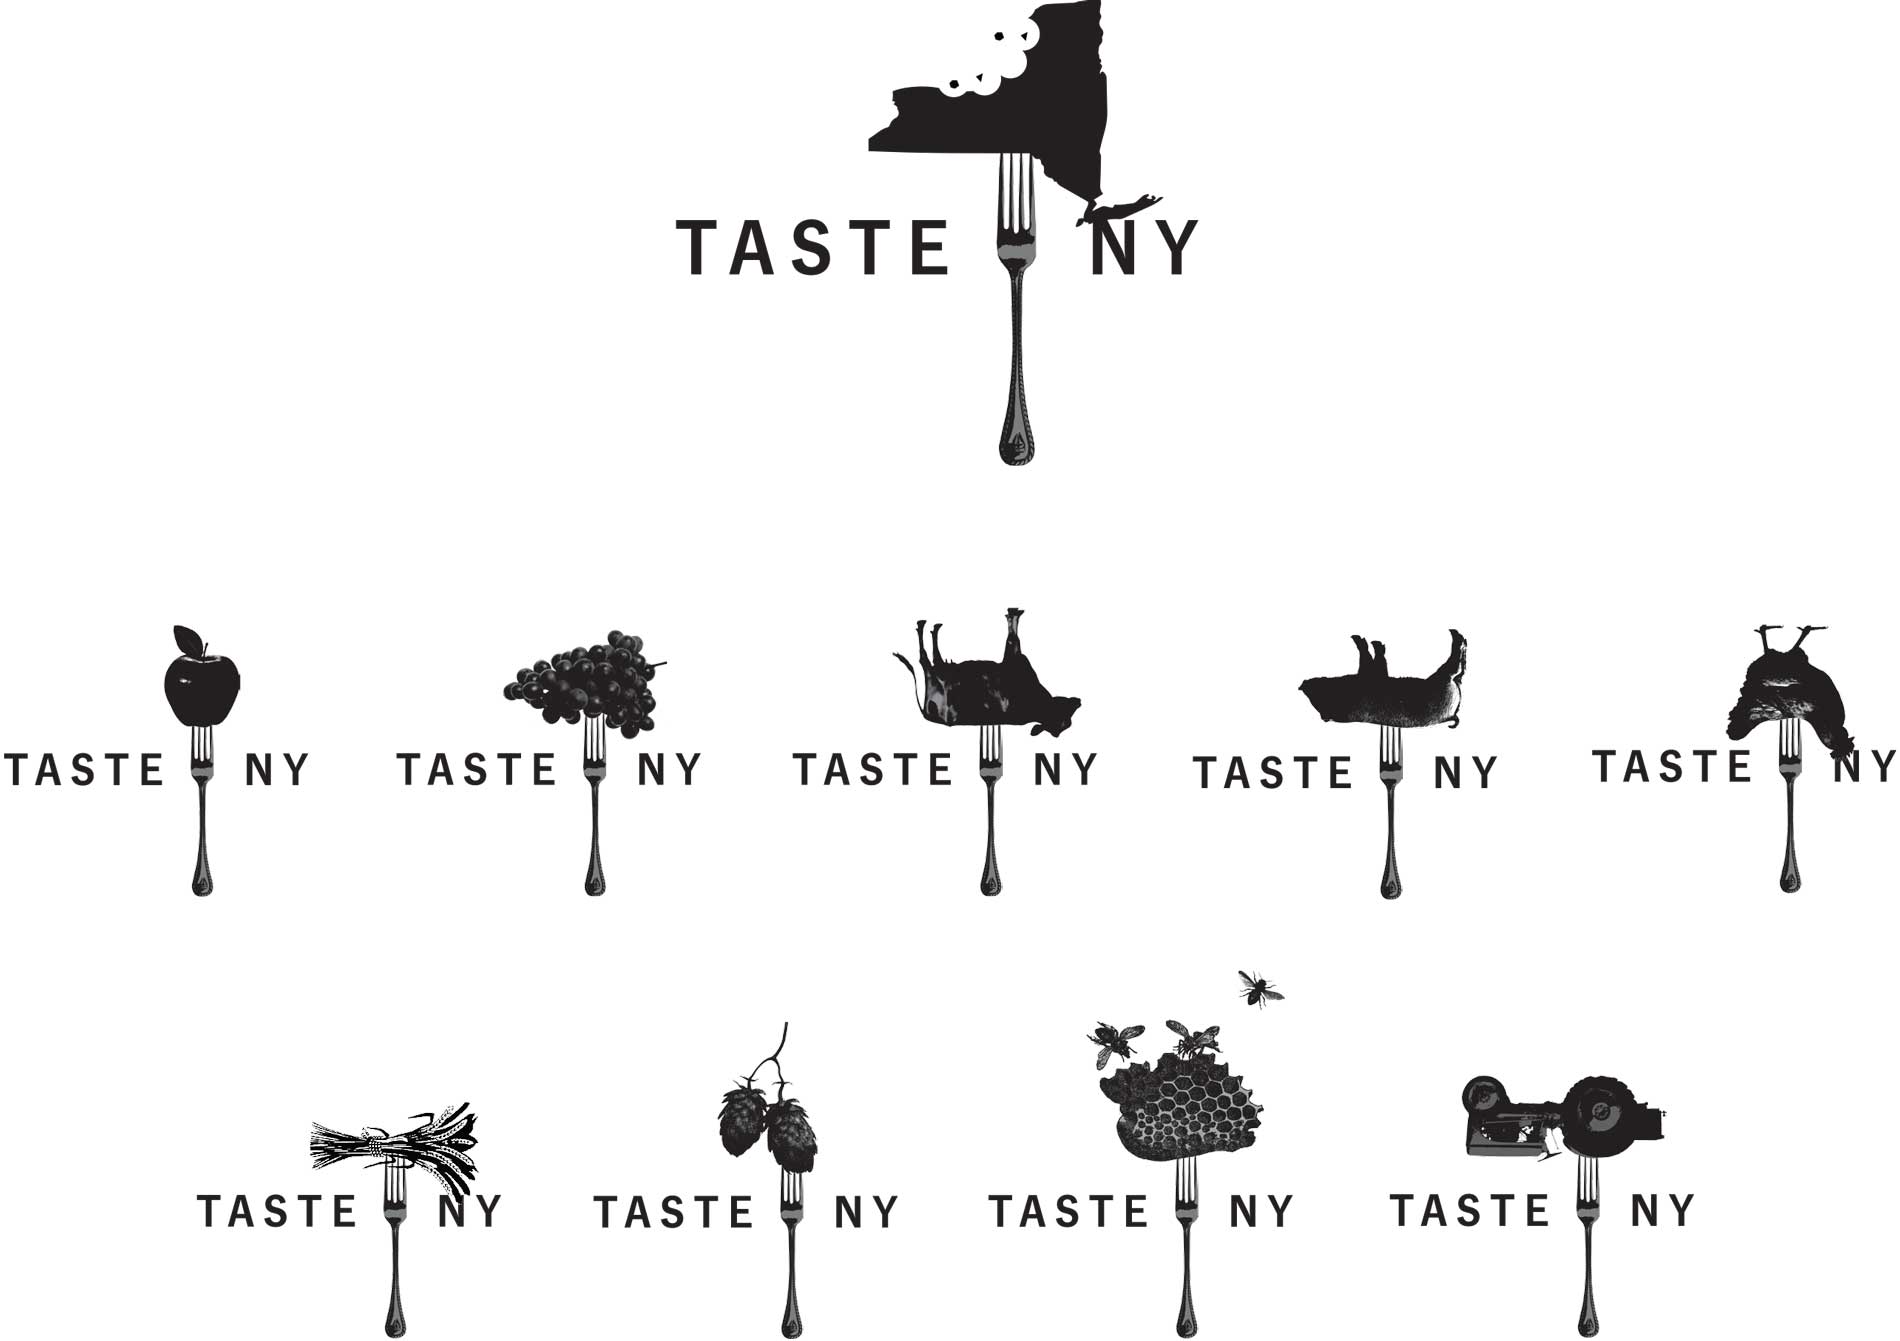 Taste of NY concept logos